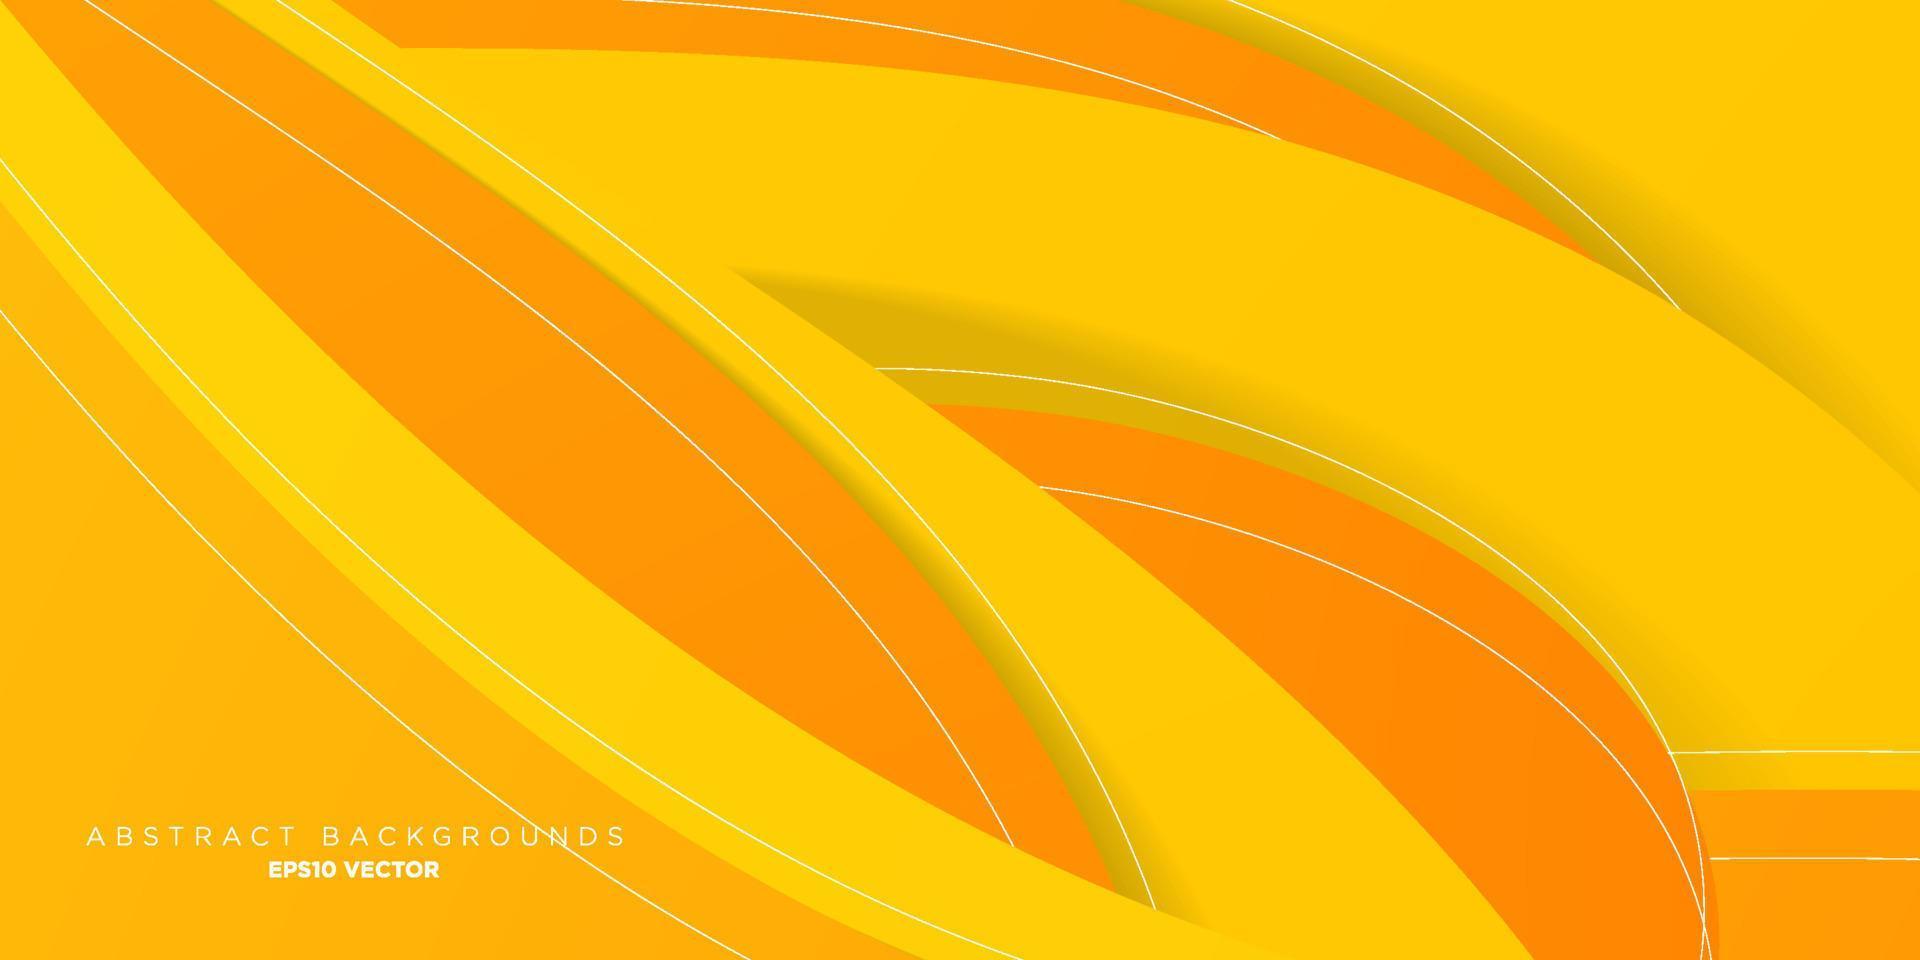 fond jaune et orange avec un design moderne, tendance et cool pattern.eps10 vecteur